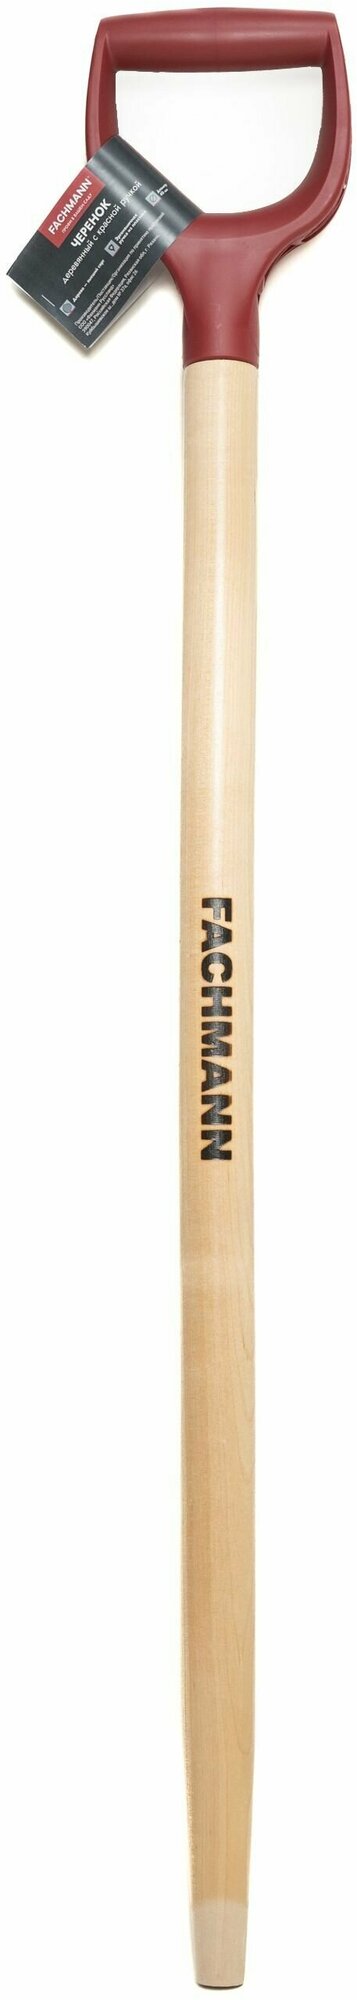 Черенок деревянный с красной ручкой FACHMANN D40 мм, L 102,5 см, лакированный, для лопаты, береза высший сорт - фотография № 5